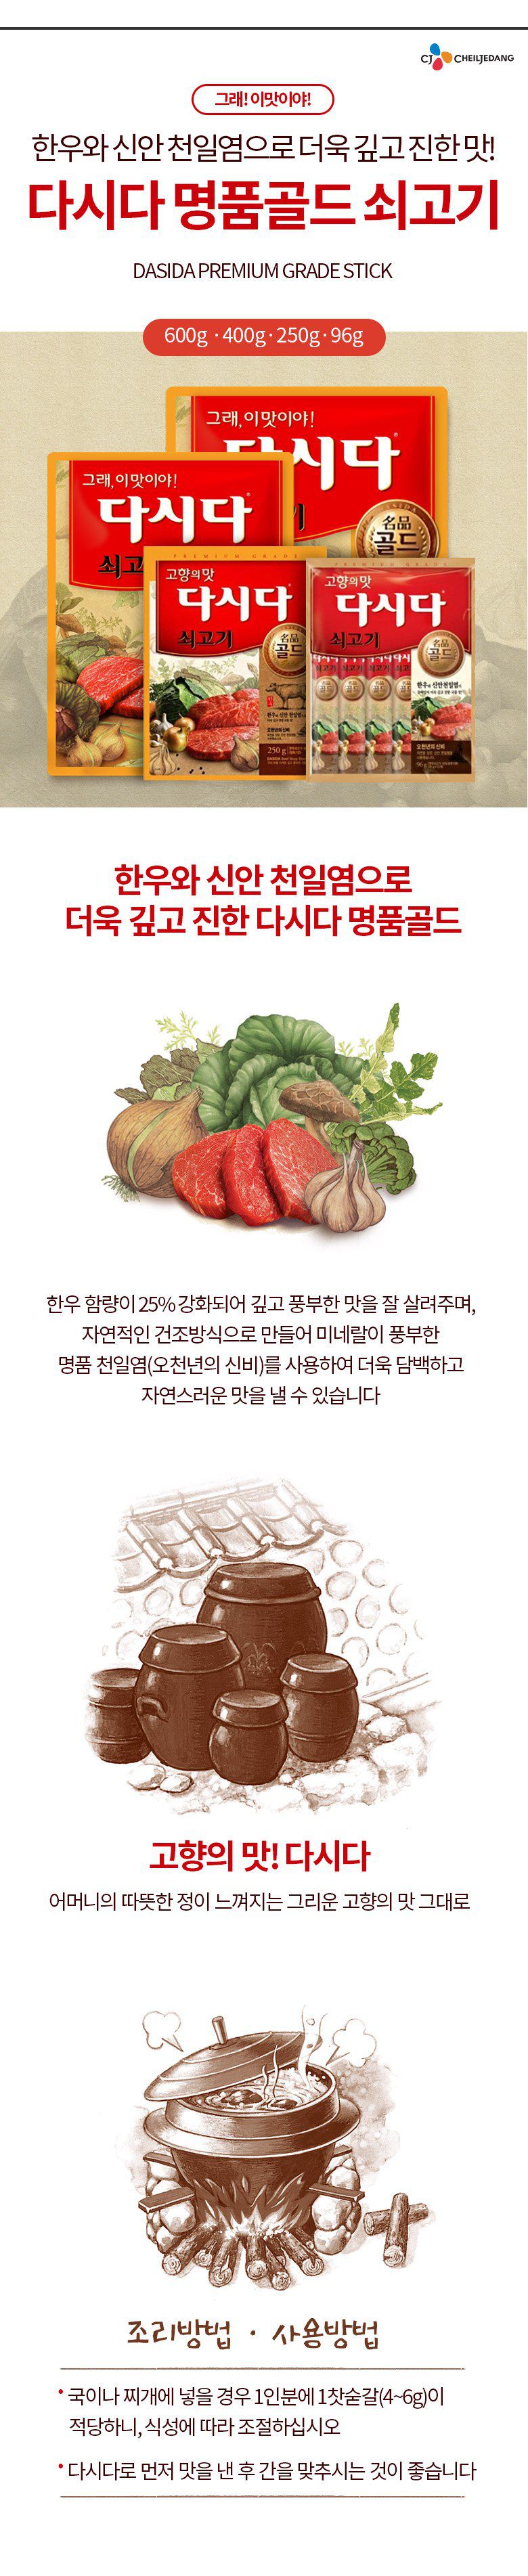 韓國食品-[CJ] 調味粉[牛肉] 250g